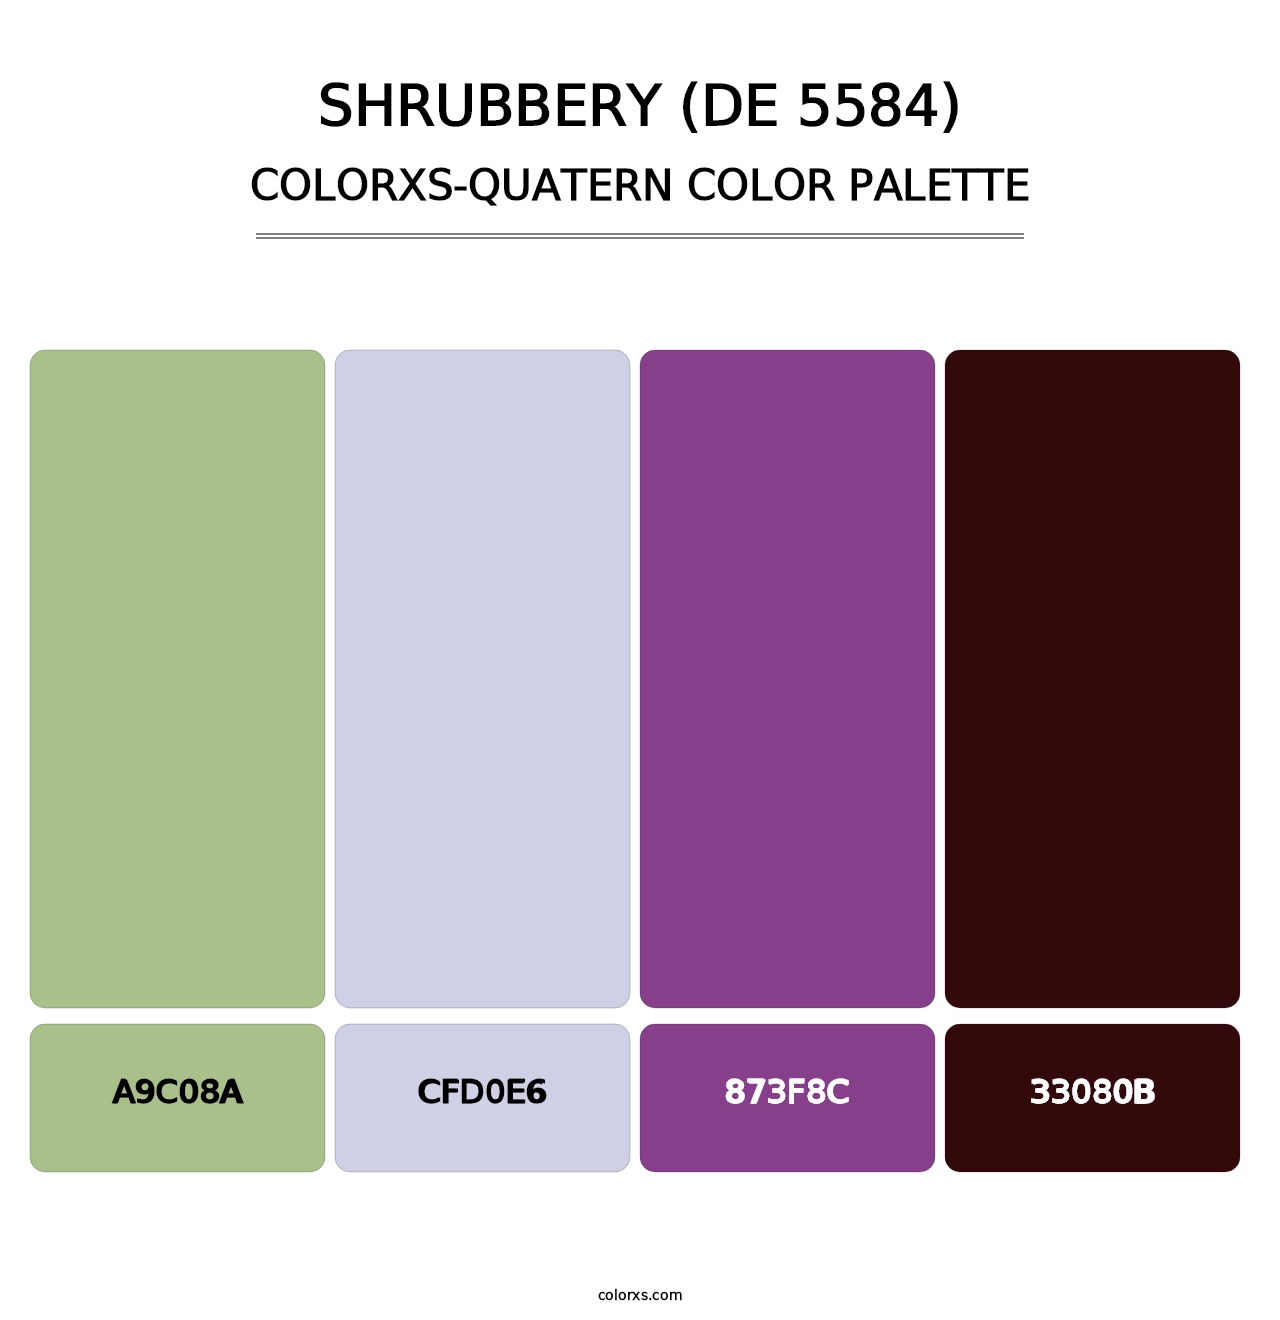 Shrubbery (DE 5584) - Colorxs Quatern Palette